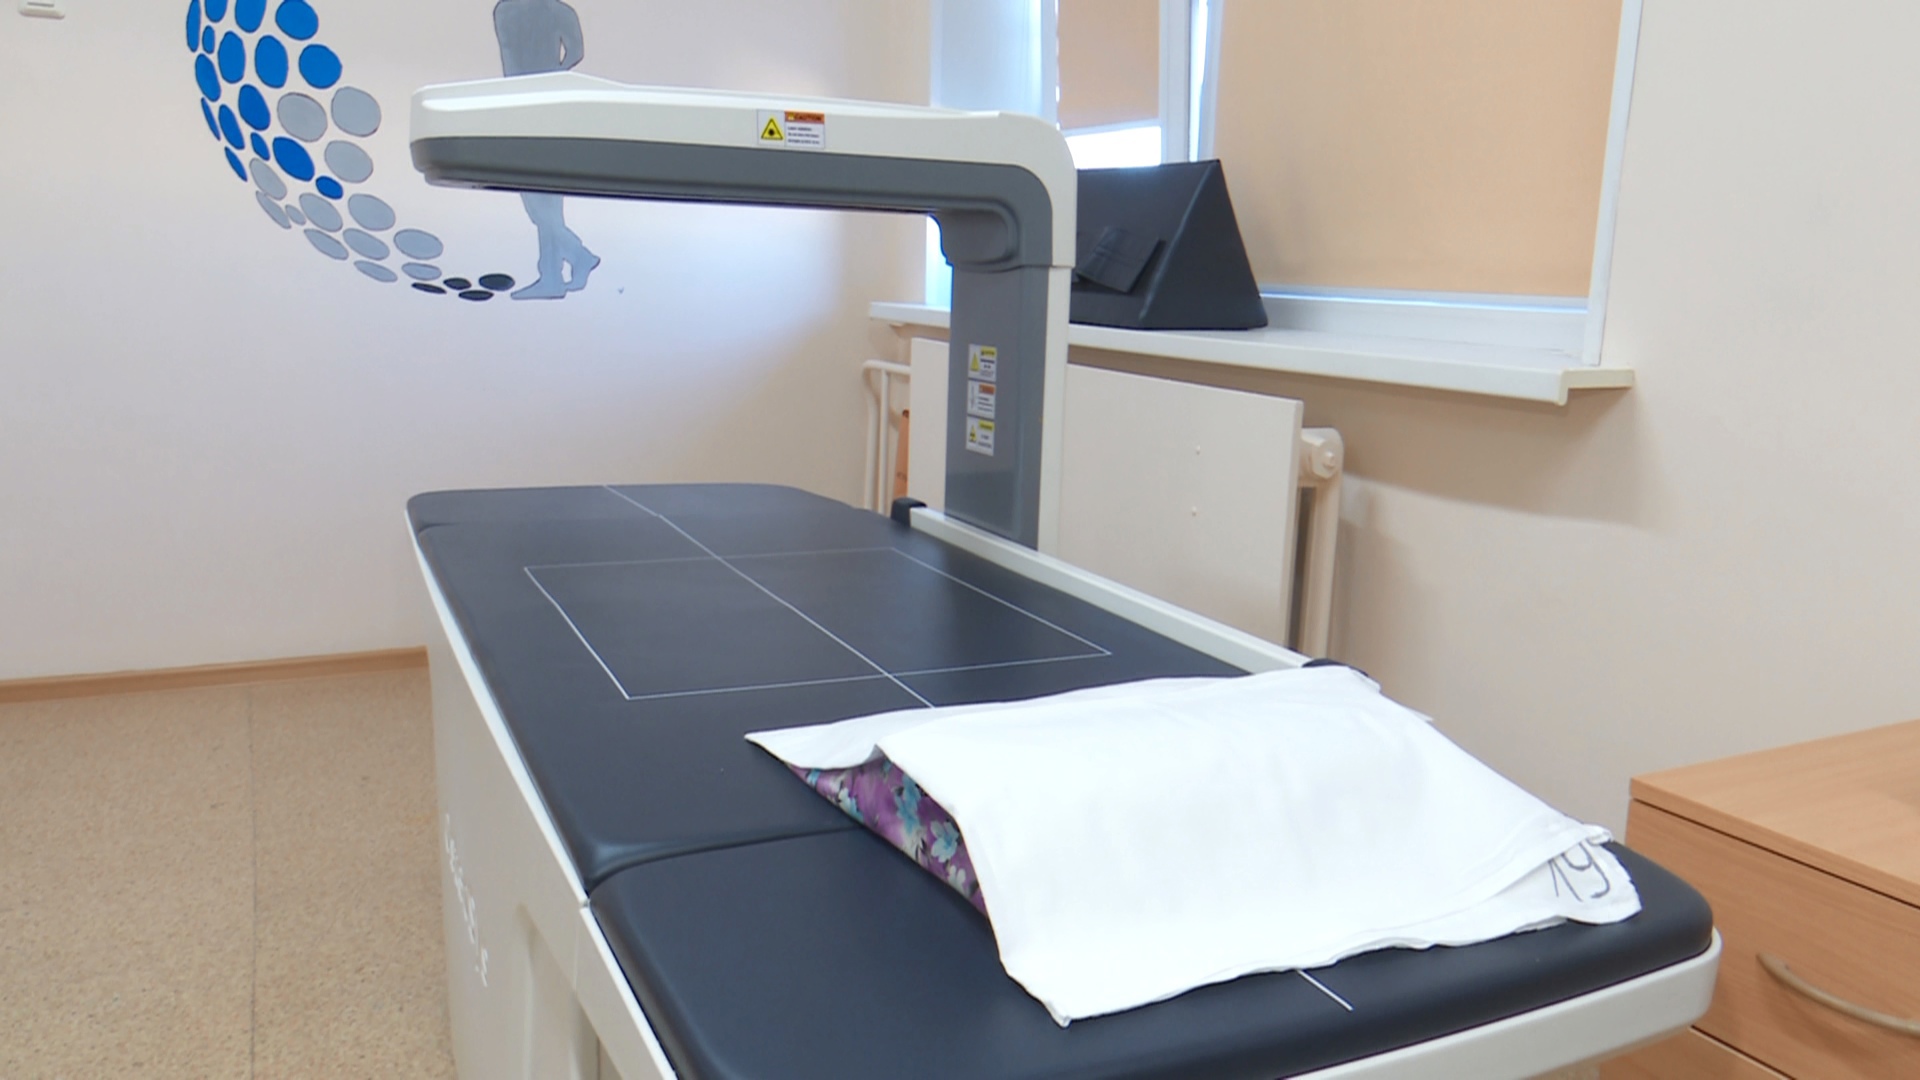 Аппарат для высокоточной диагностики костных болезней появился в больнице Челябинска